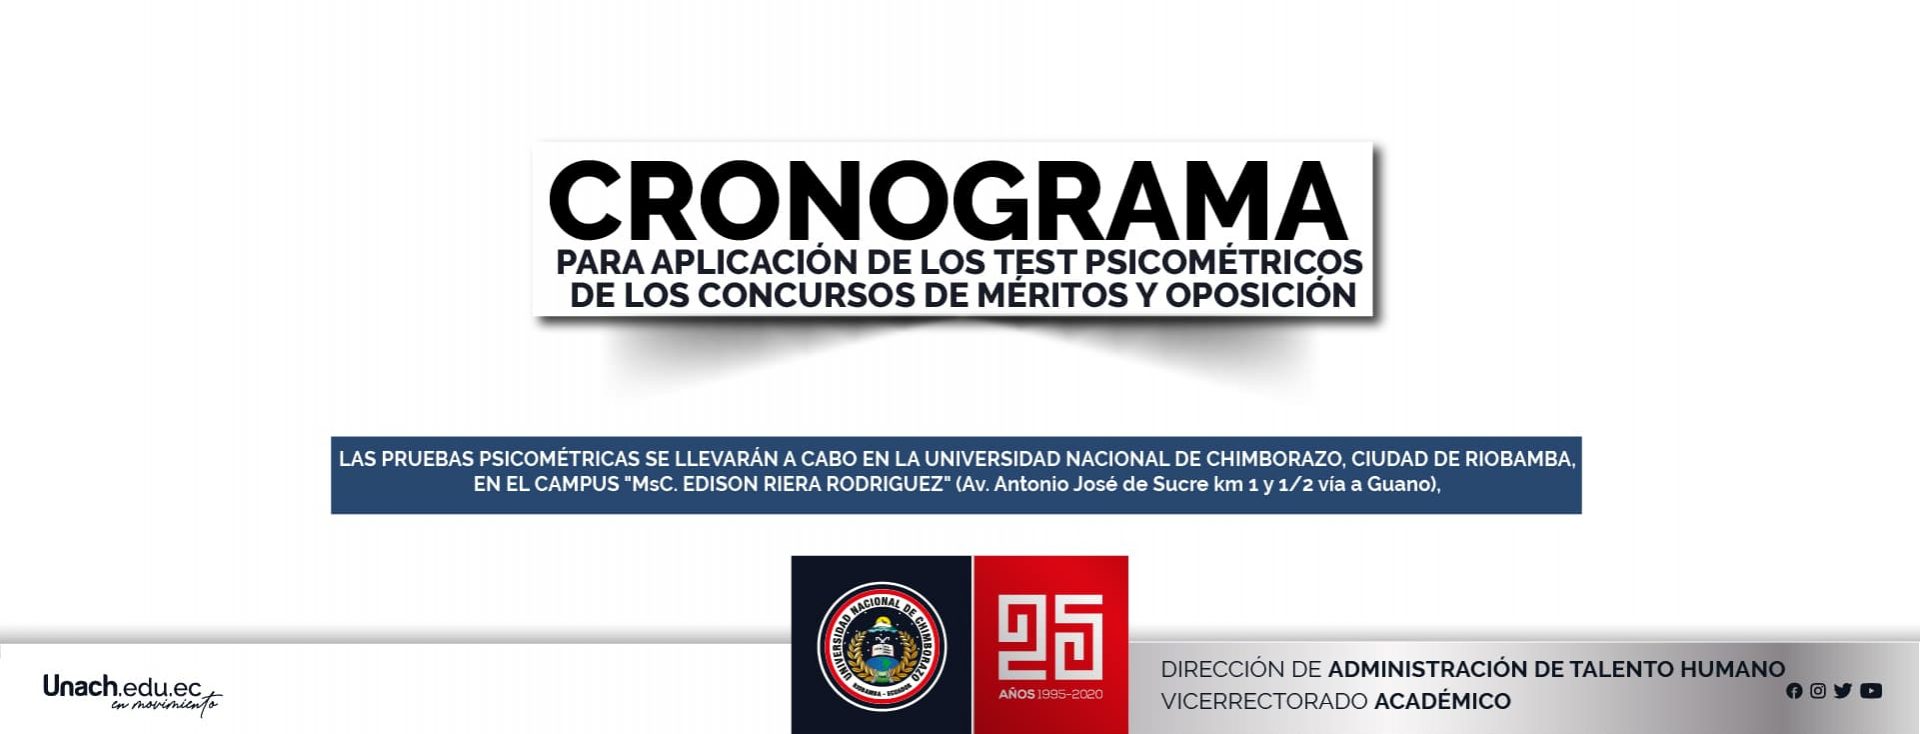 CRONOGRAMA PARA APLICACIÓN DE LOS TEST PSICOMÉTRICOS DE LOS CONCURSOS DE MÉRITOS Y OPOSICIÓN